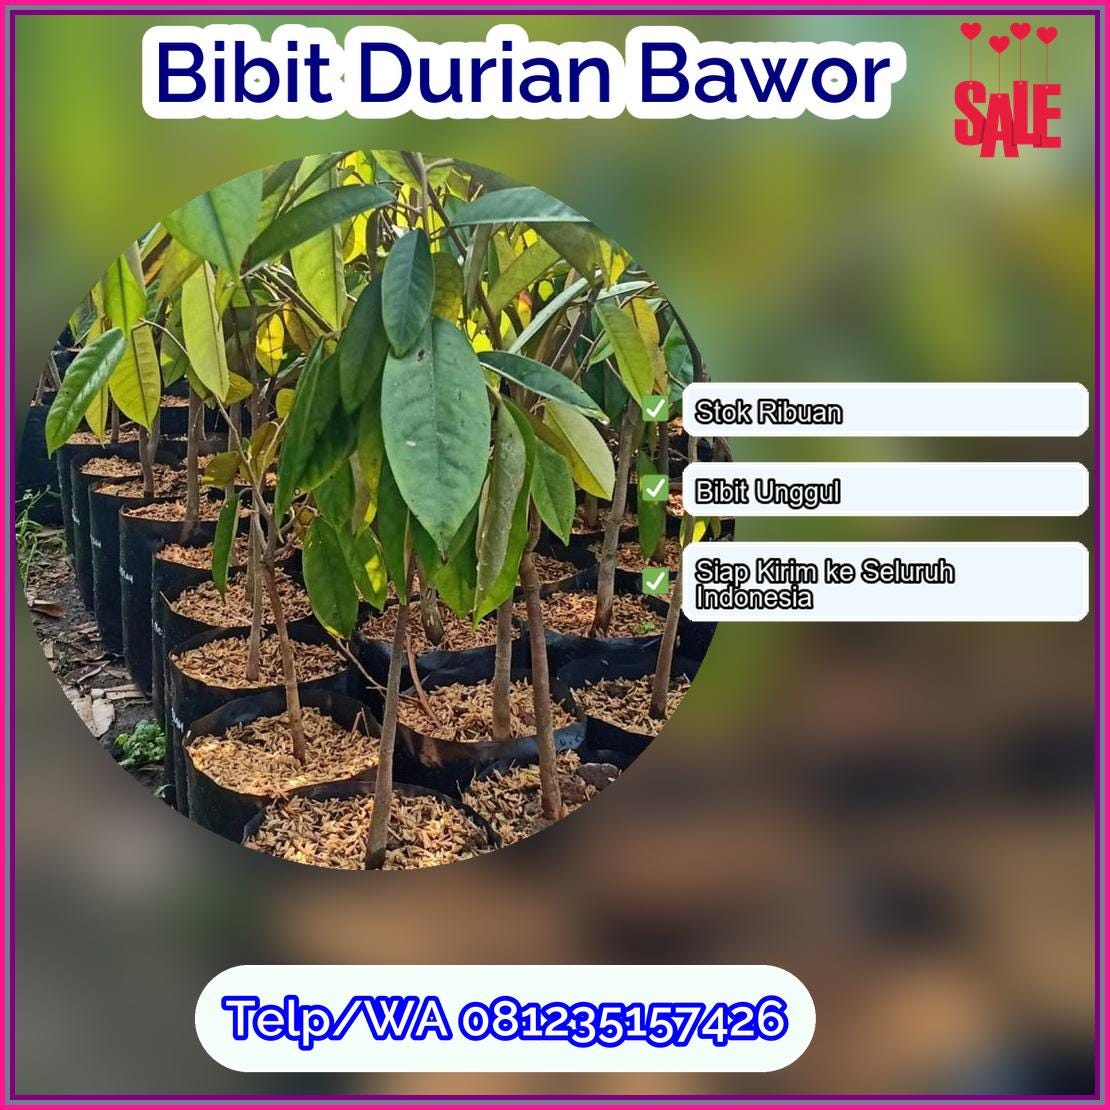 Harga Bibit Durian Bawor Bungo